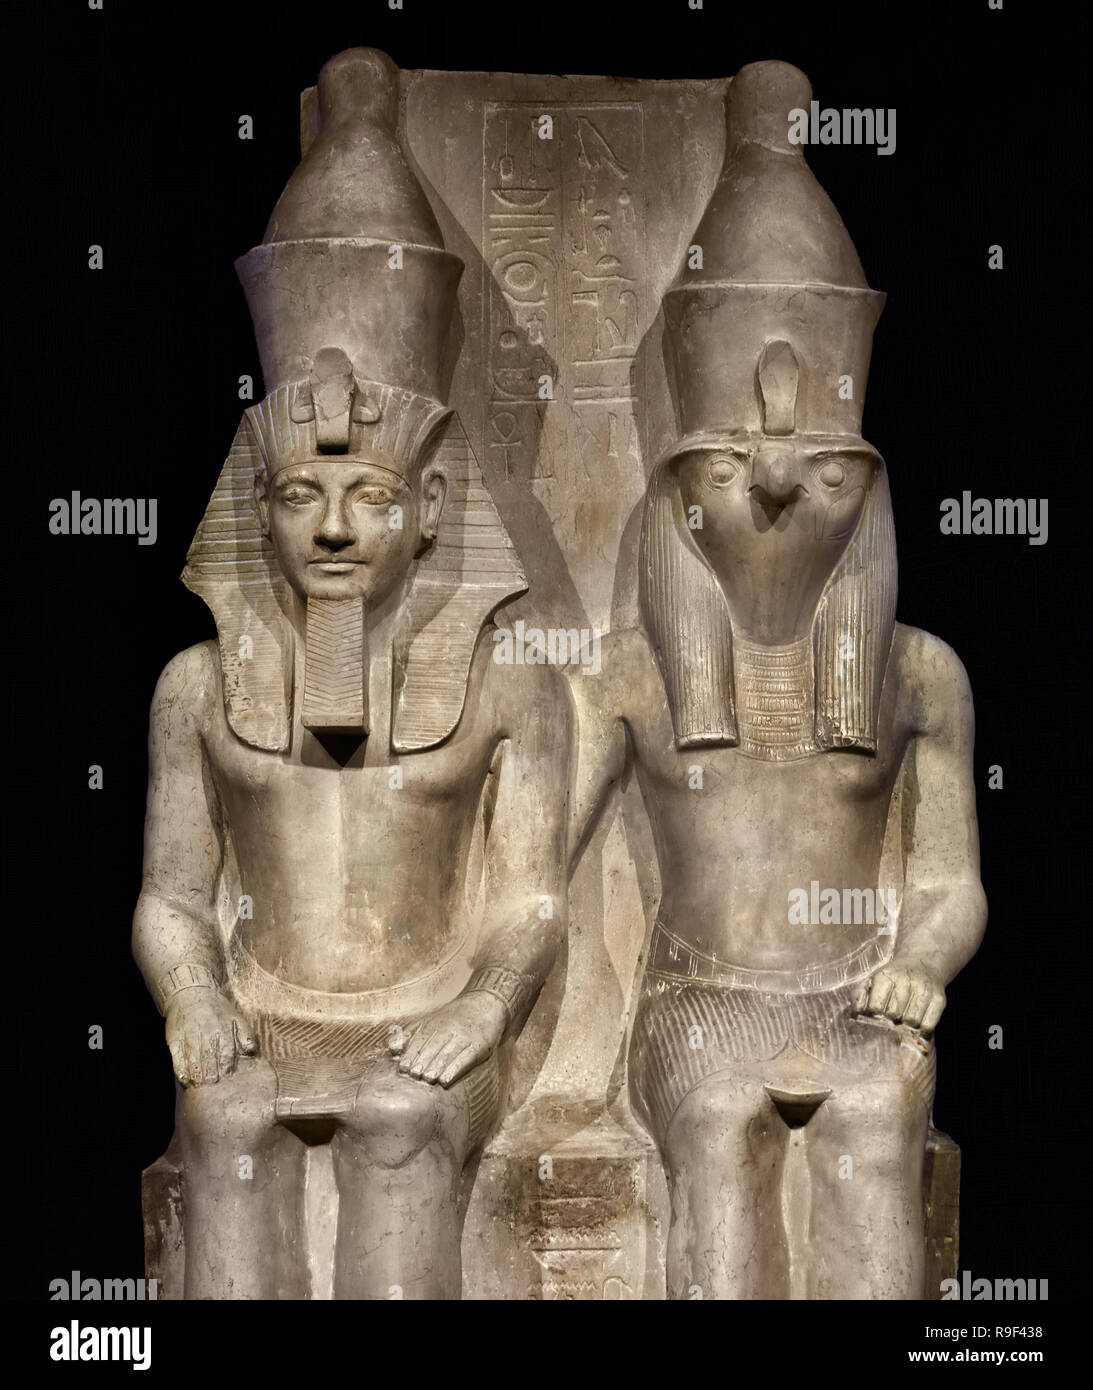 Immagine di Horus e Horemheb questo tempio immagine mostra il dio Horus e il Faraone Horemheb (1319-1305 a.C.) seduti fianco a fianco. Horus porta un Falcon's testa come una potenza celeste. Il re ha le stesse dimensioni di quello di Dio, perché secondo gli Egiziani che è ugualmente potente. Egli è l'aspetto terrena di Horus e quindi di se stesso a Dio. (1,52 metri di calcare Periodo: Nuovo Regno, XVIII dinastia (1319-1305 a.C.) Egitto, egiziano. Foto Stock